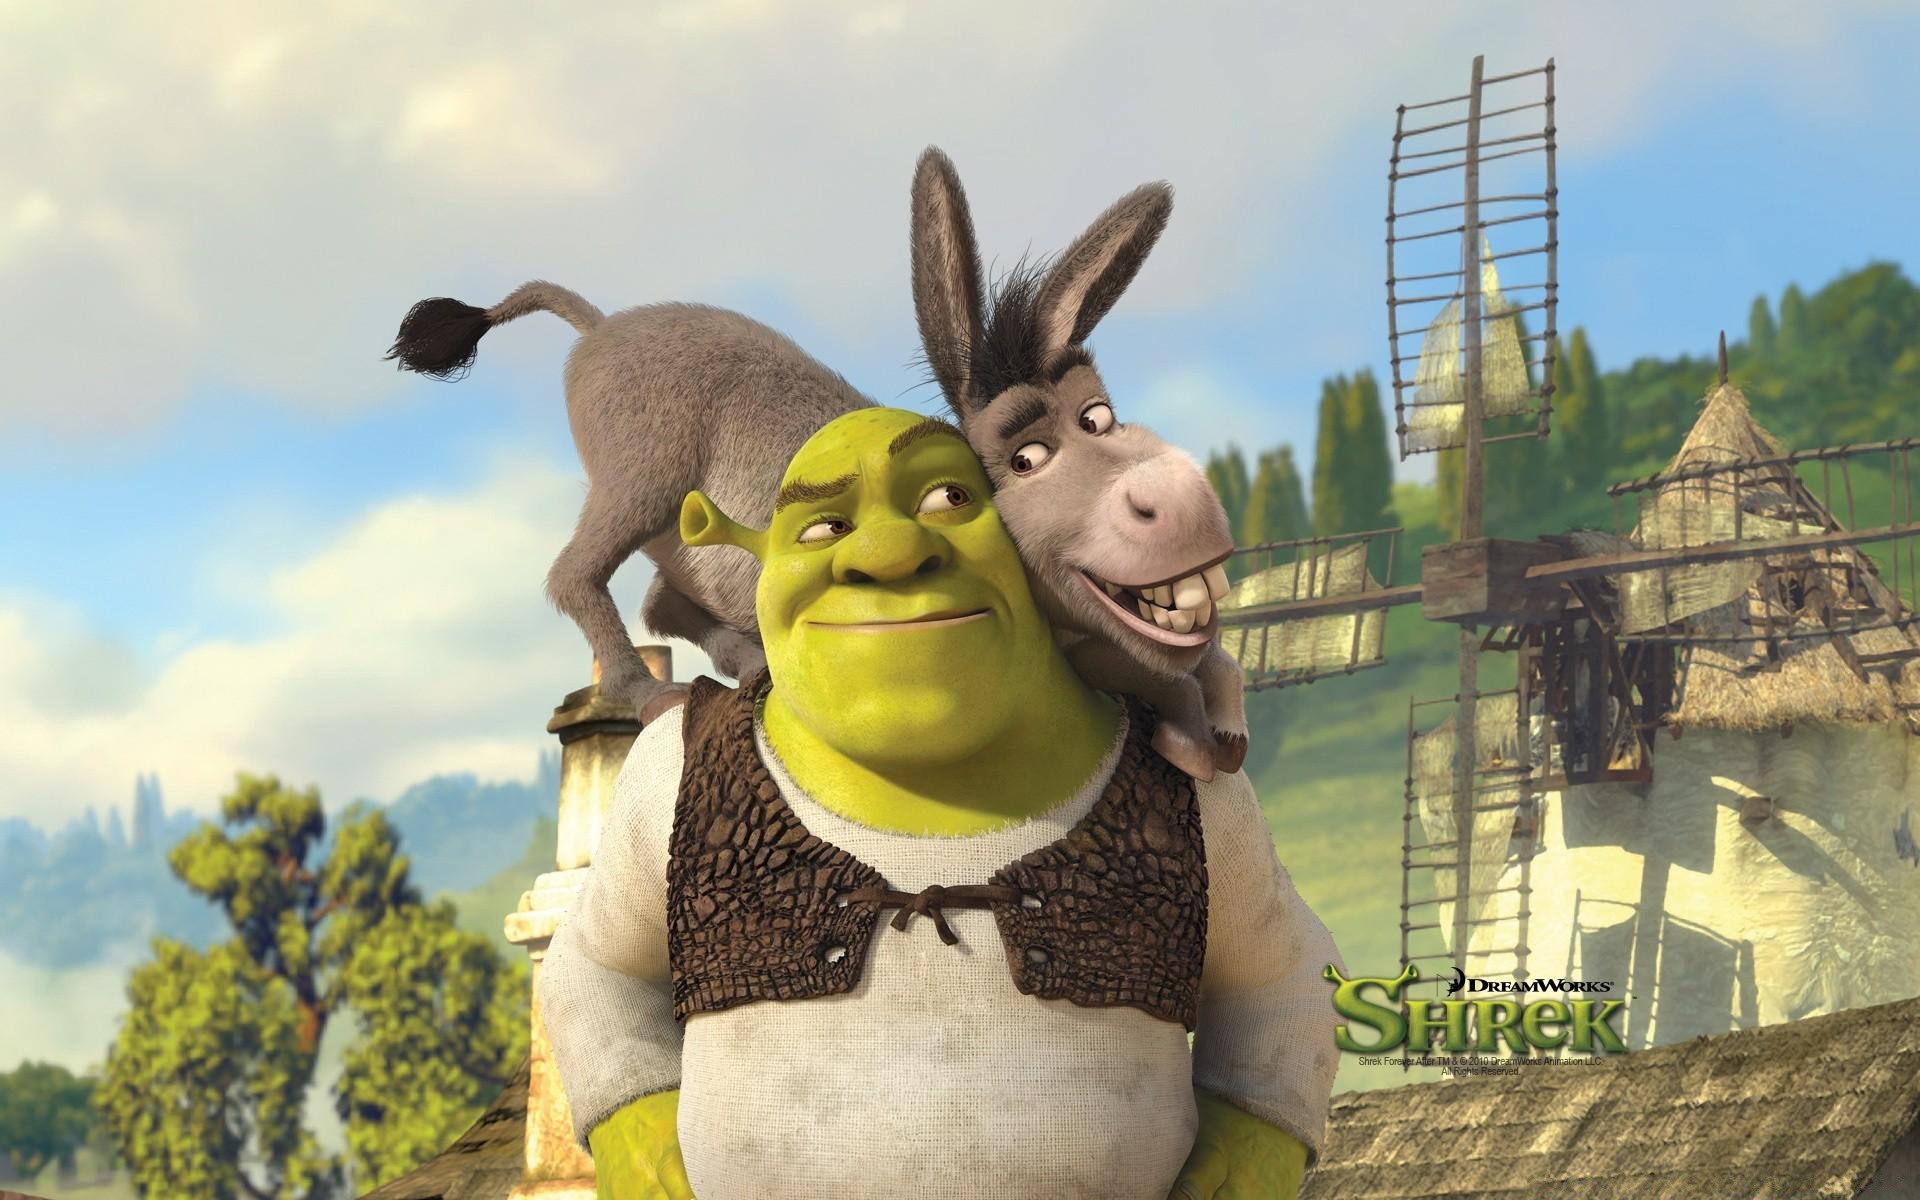 Shrek And Donkey, Shrek Forever After